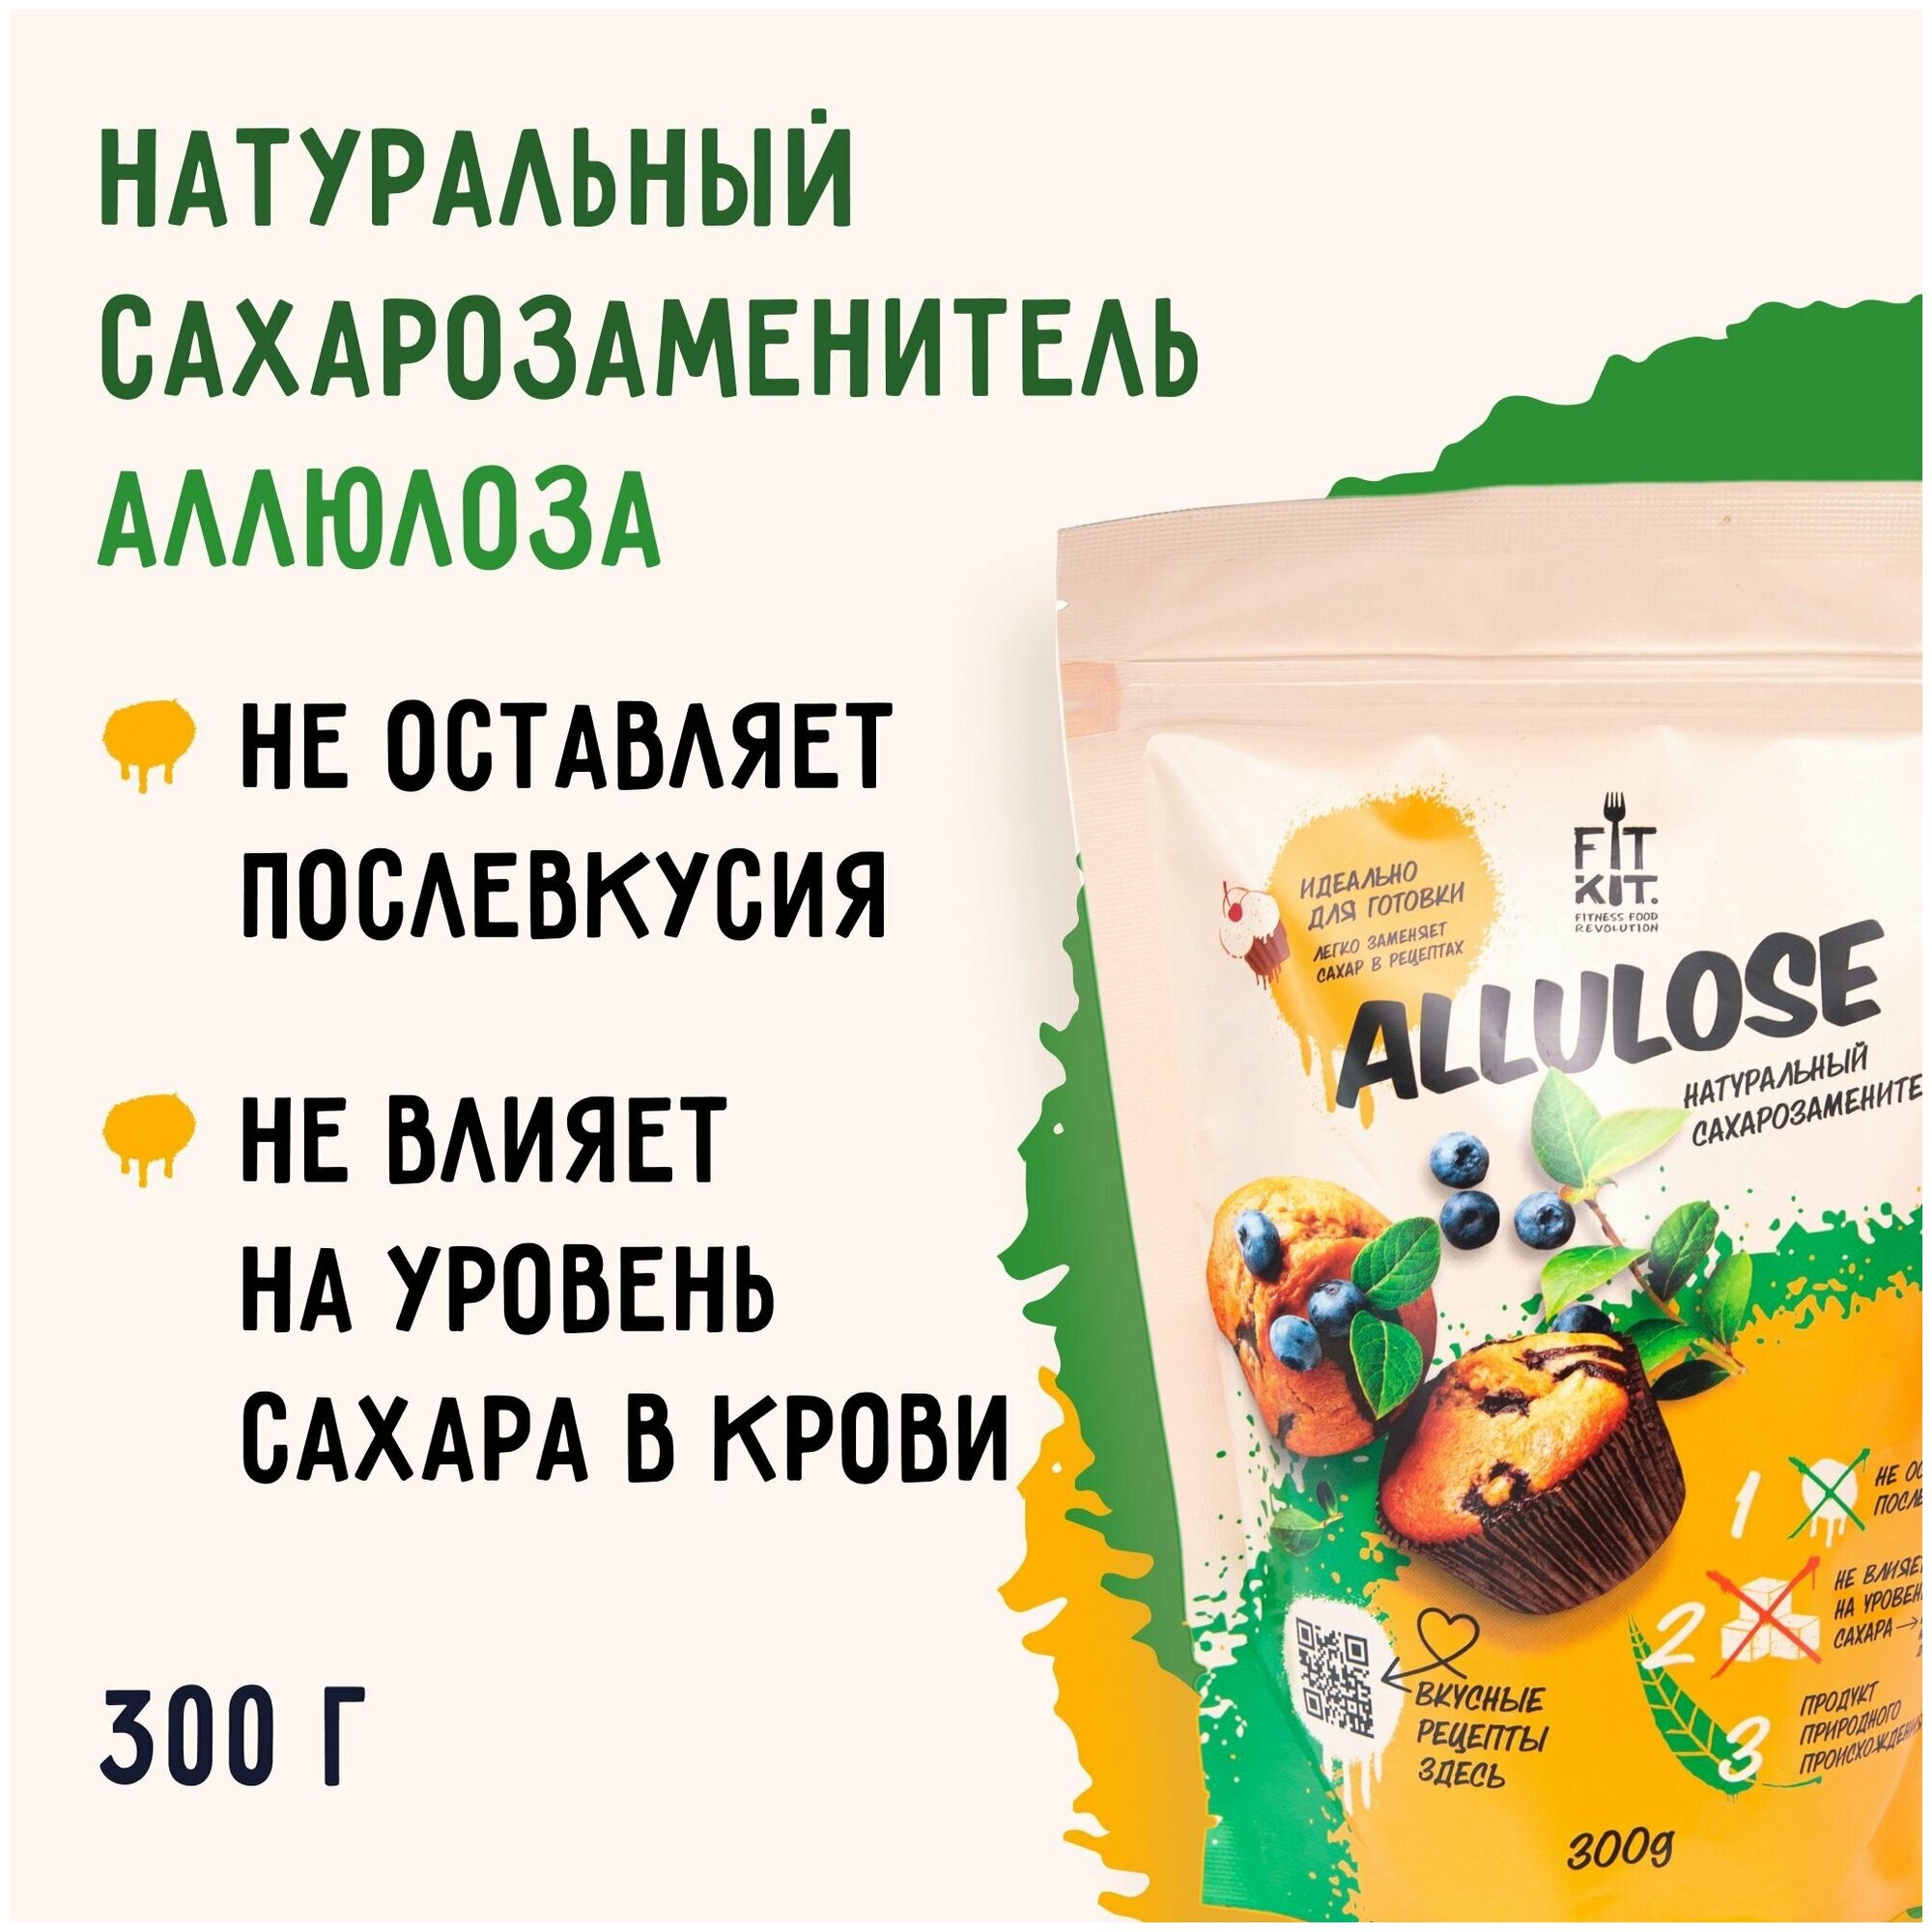 Сахарозаменитель Аллюлоза / Здоровое питание / 300 гр